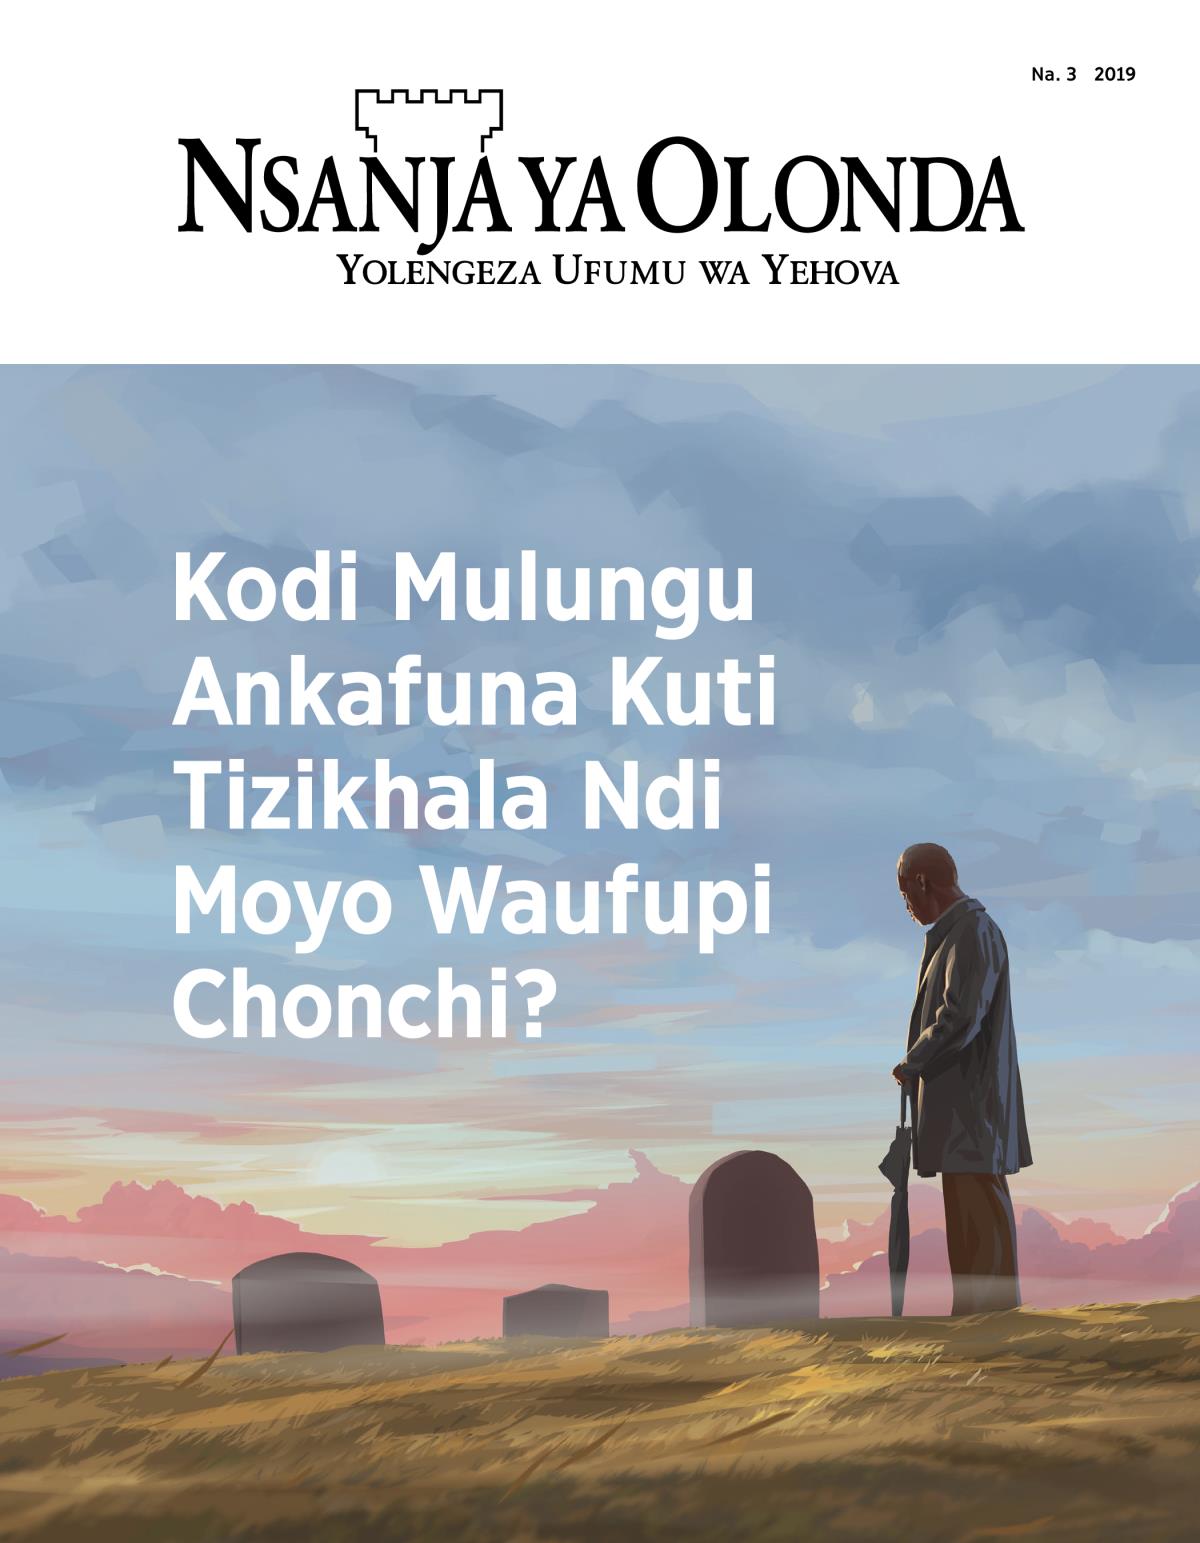 Kodi Mulungu Ankafuna Kuti Tizikhala Ndi Moyo Waufupi Chonchi